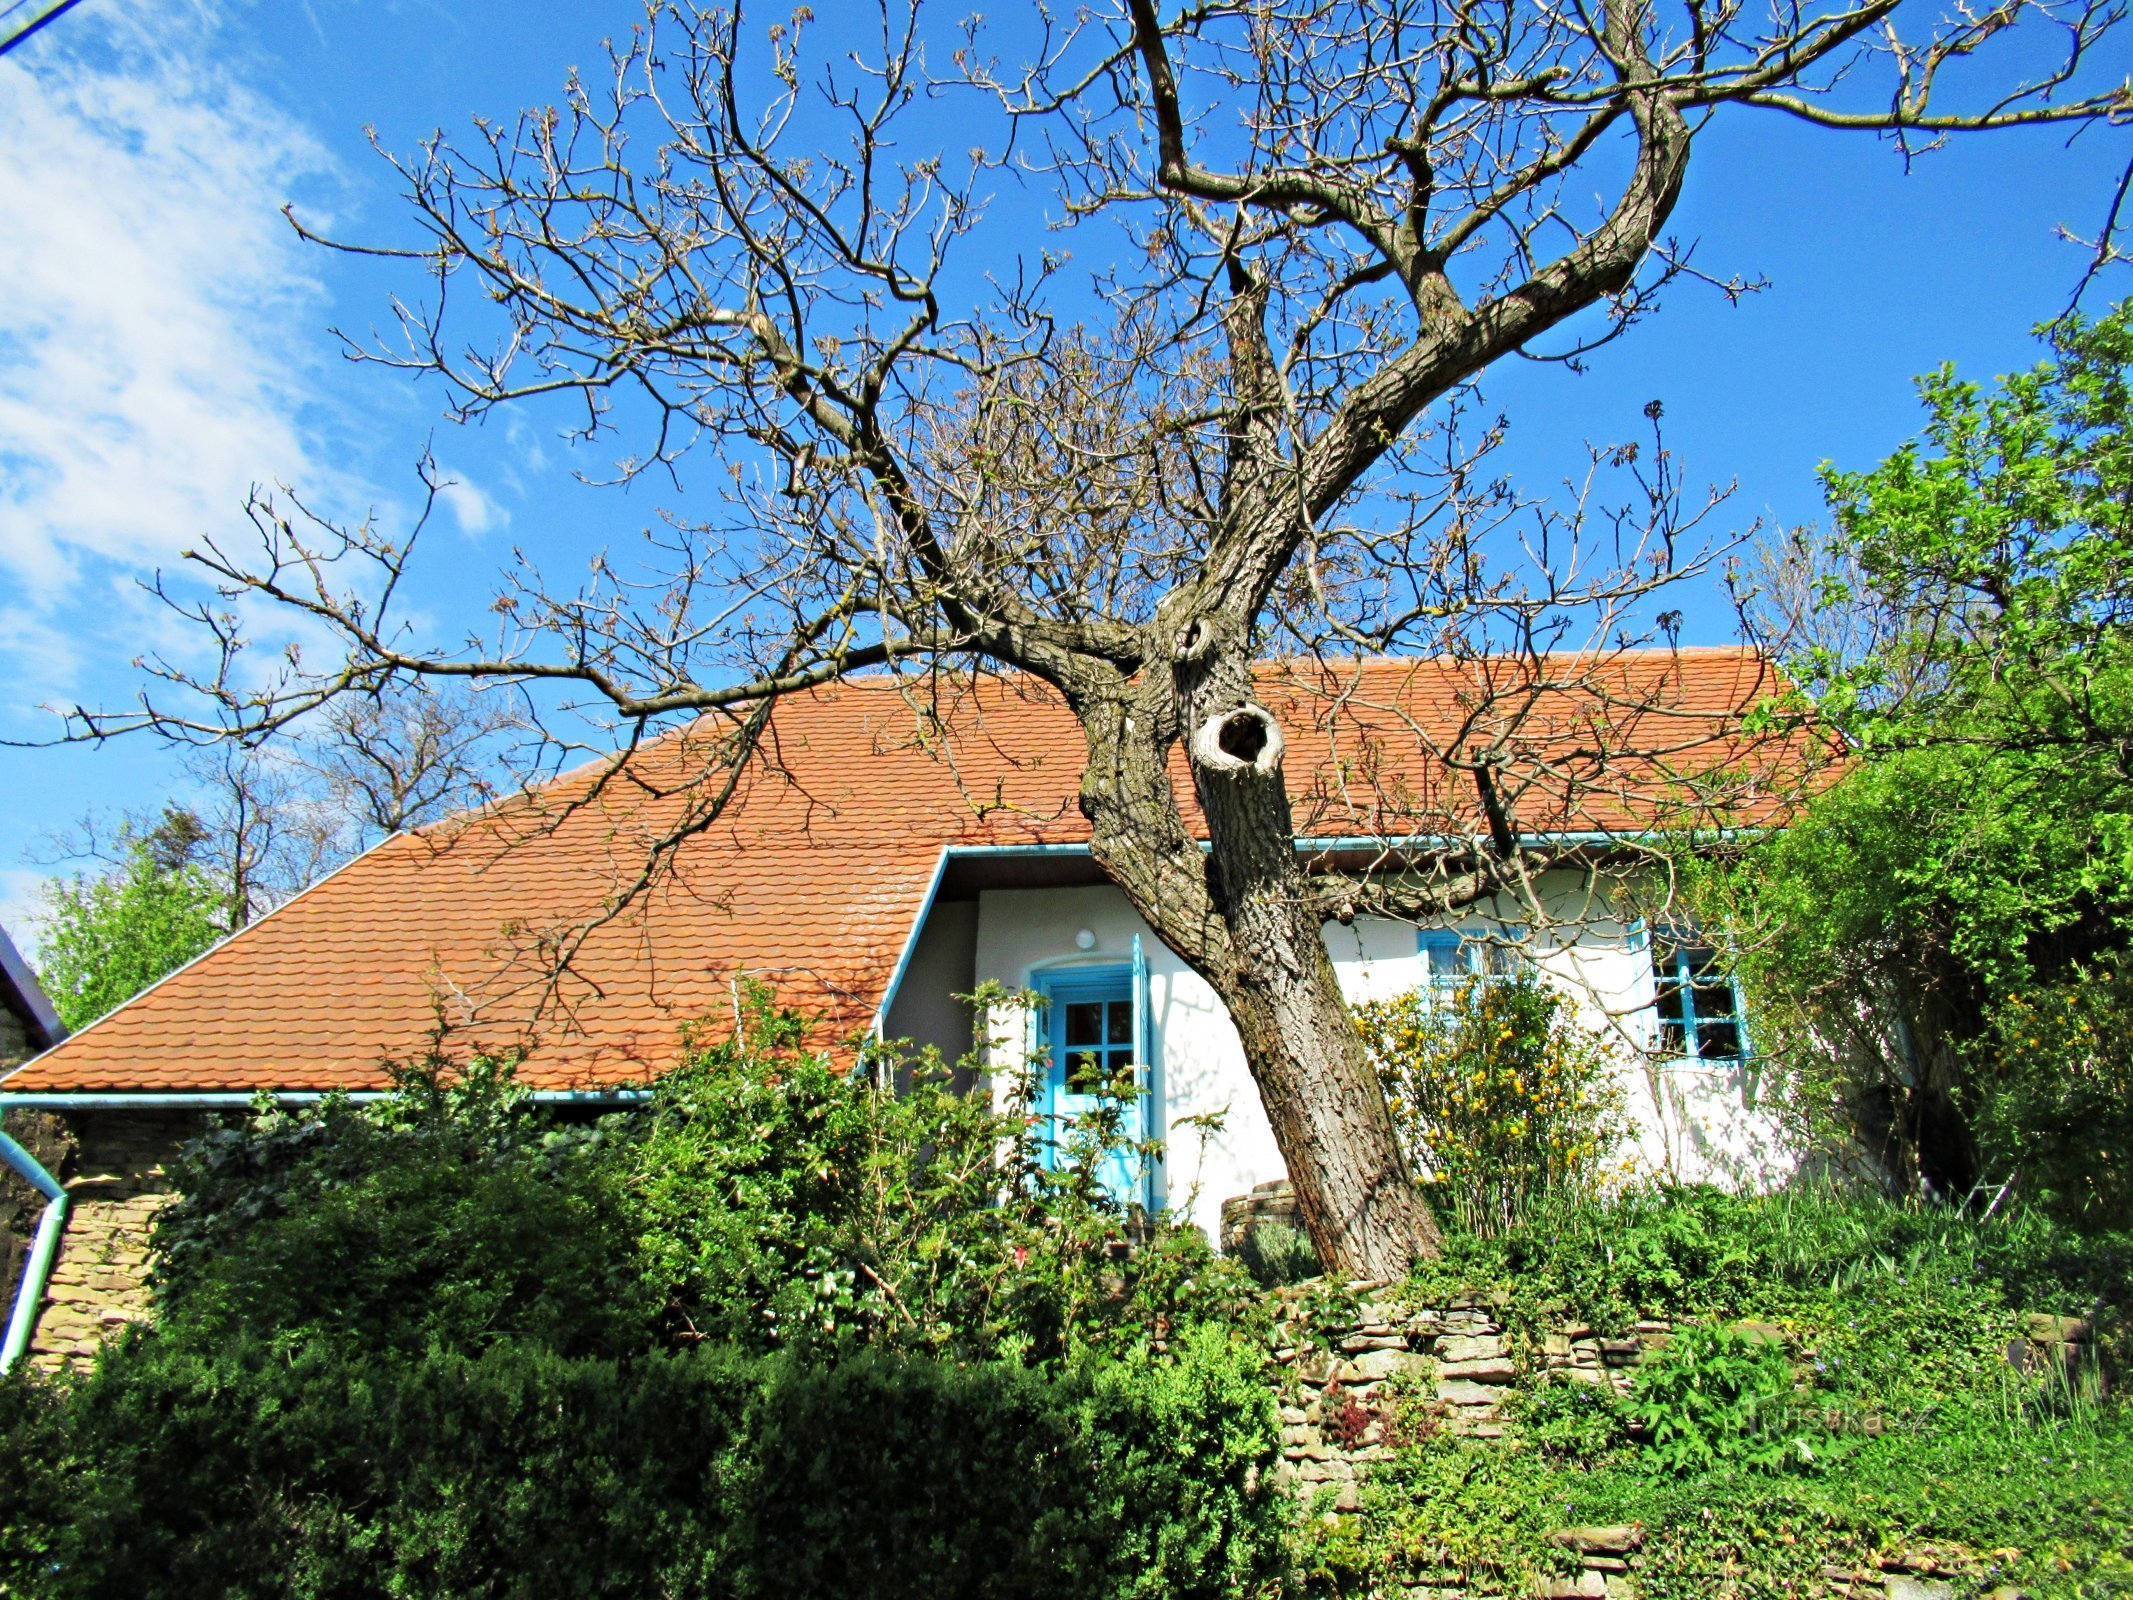 Vas Javorník, slikovite hiše v okolici - Kopanky v vasi Javorník na Slovaškem